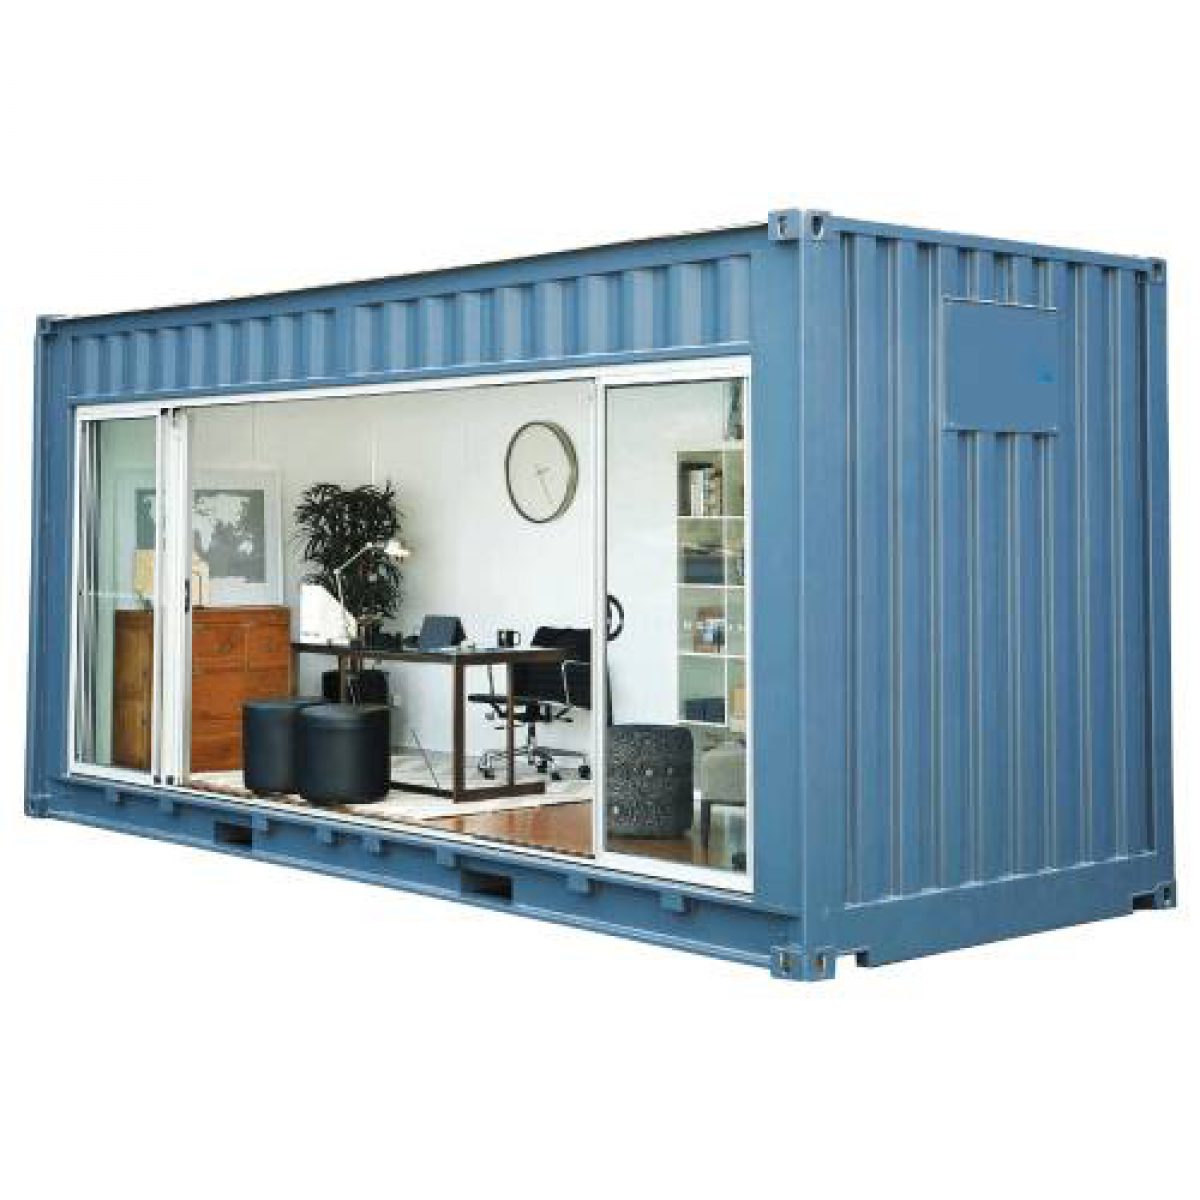 xây dựng nhà container giá bao nhiêu